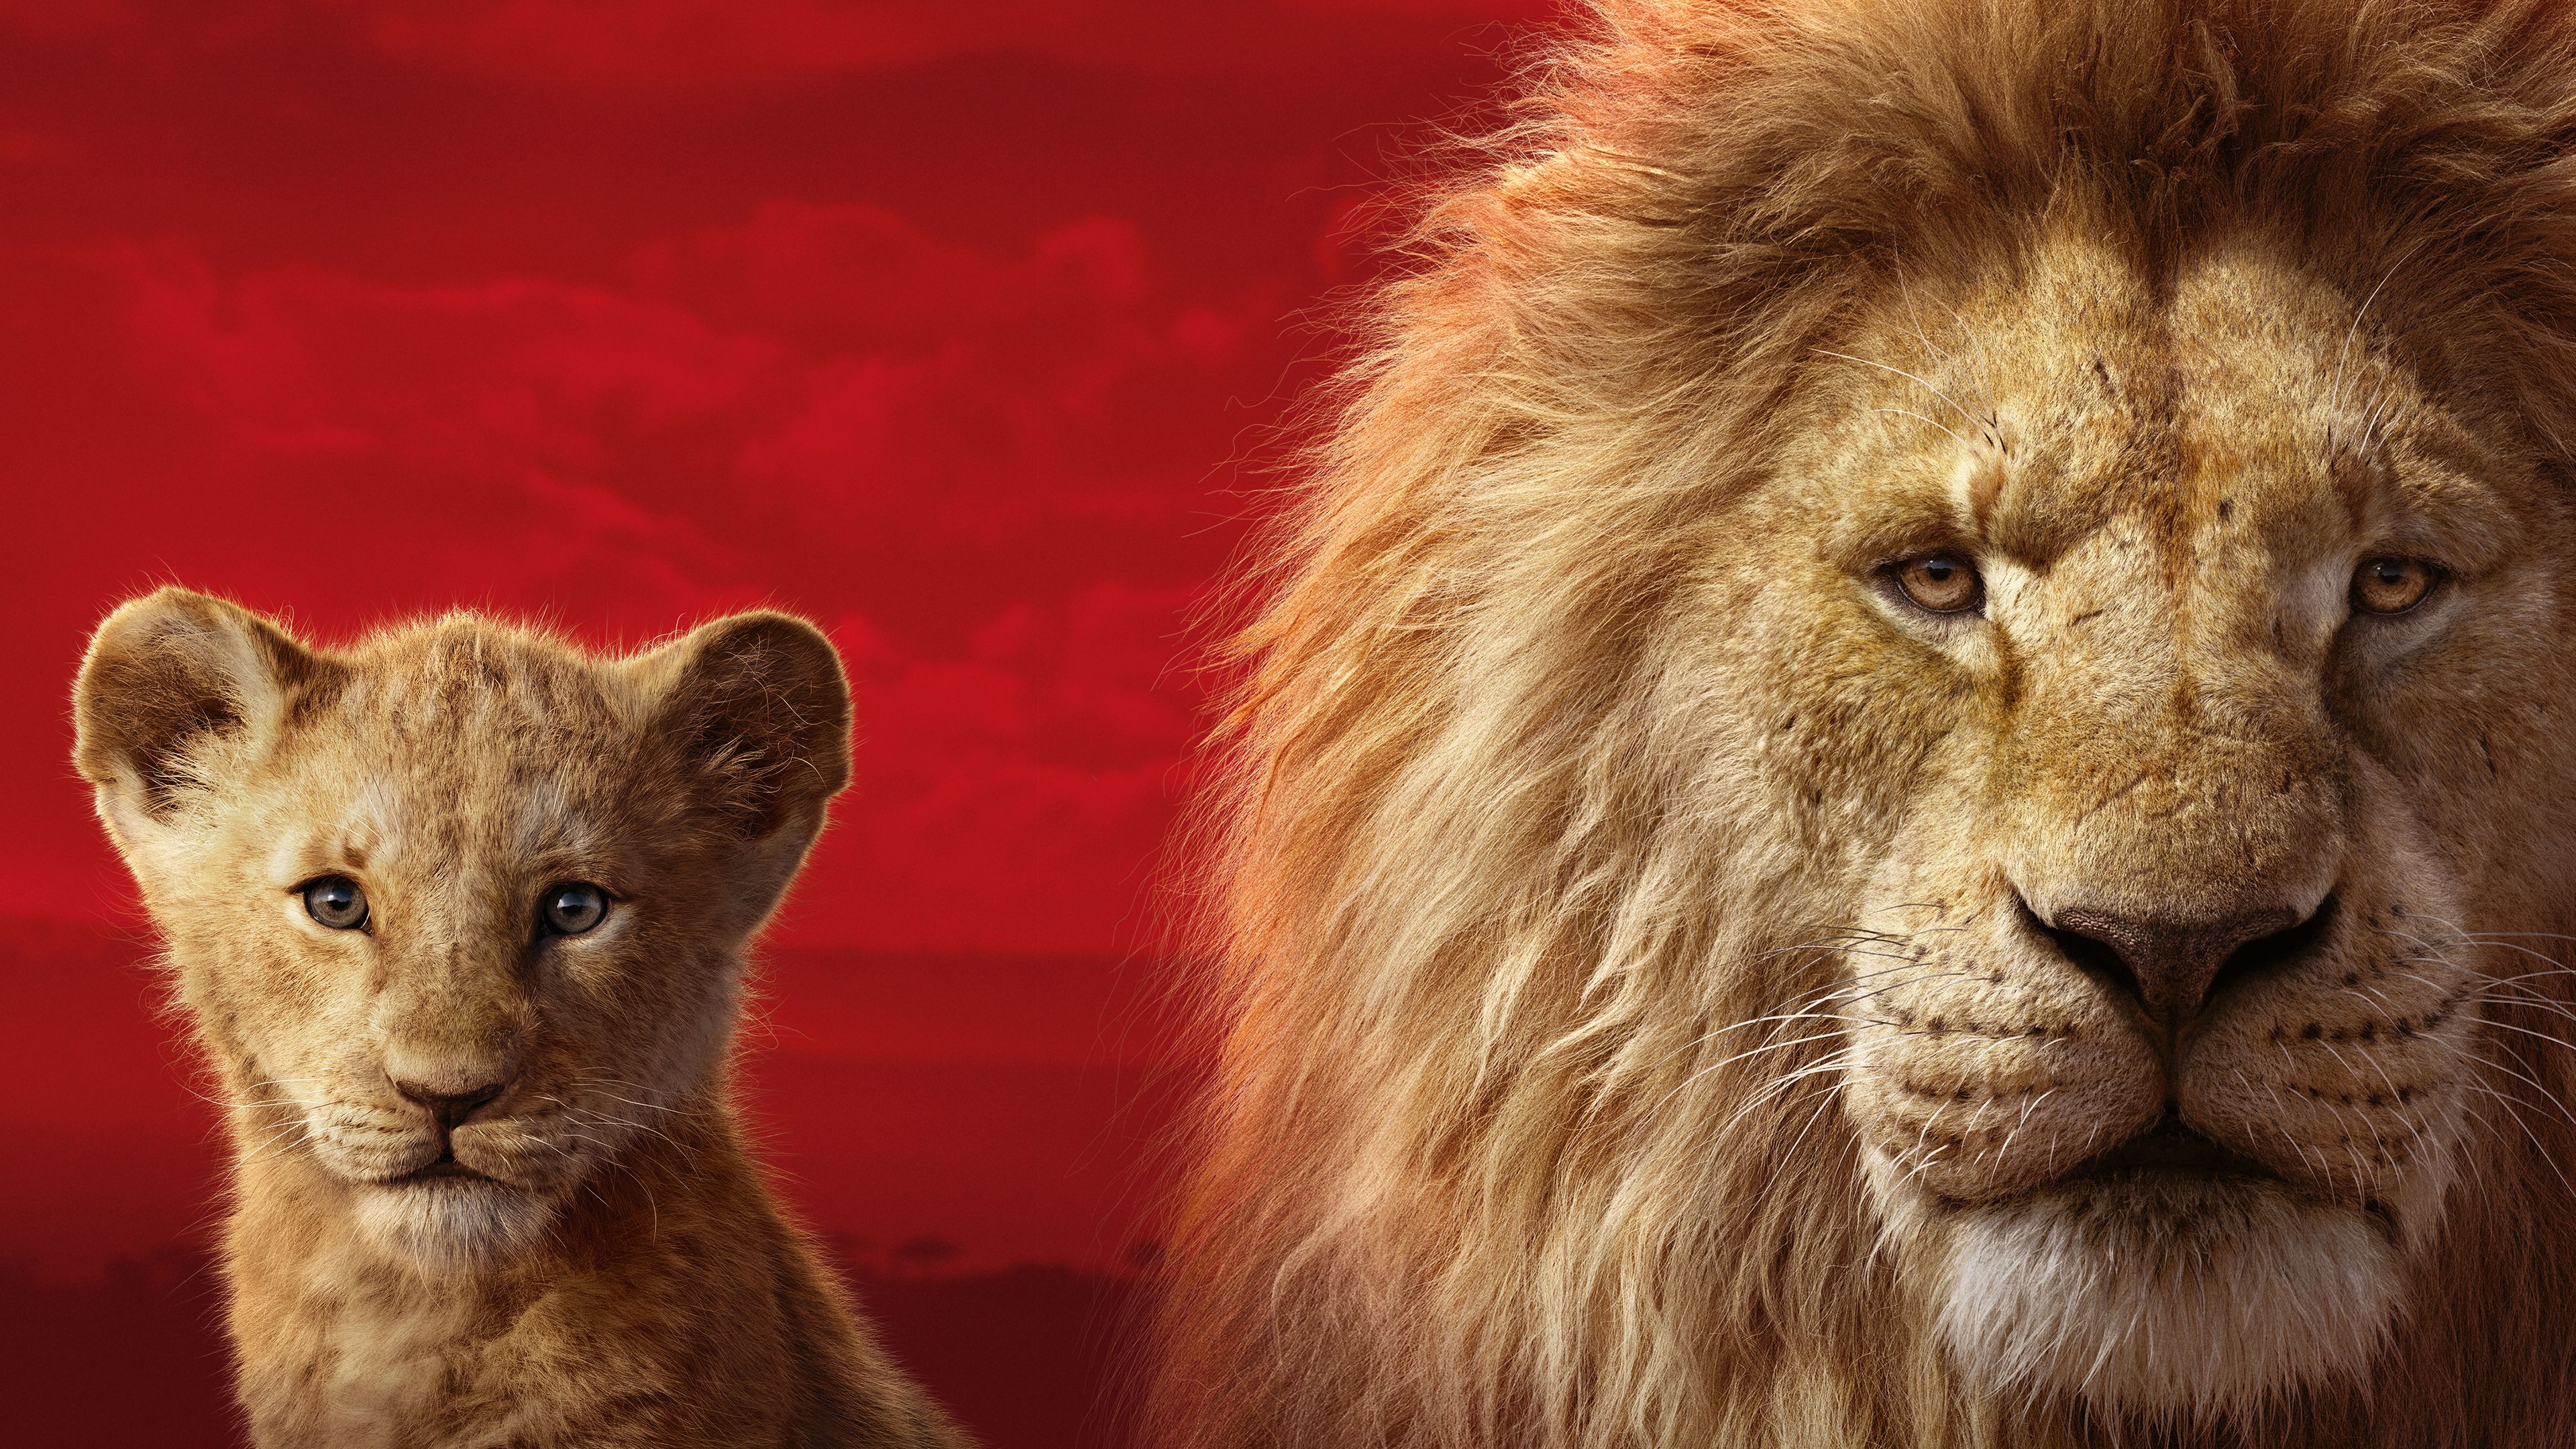 Fondos de pantalla 4k The Lion King 2019 2019 películas fondos de pantalla, 4k